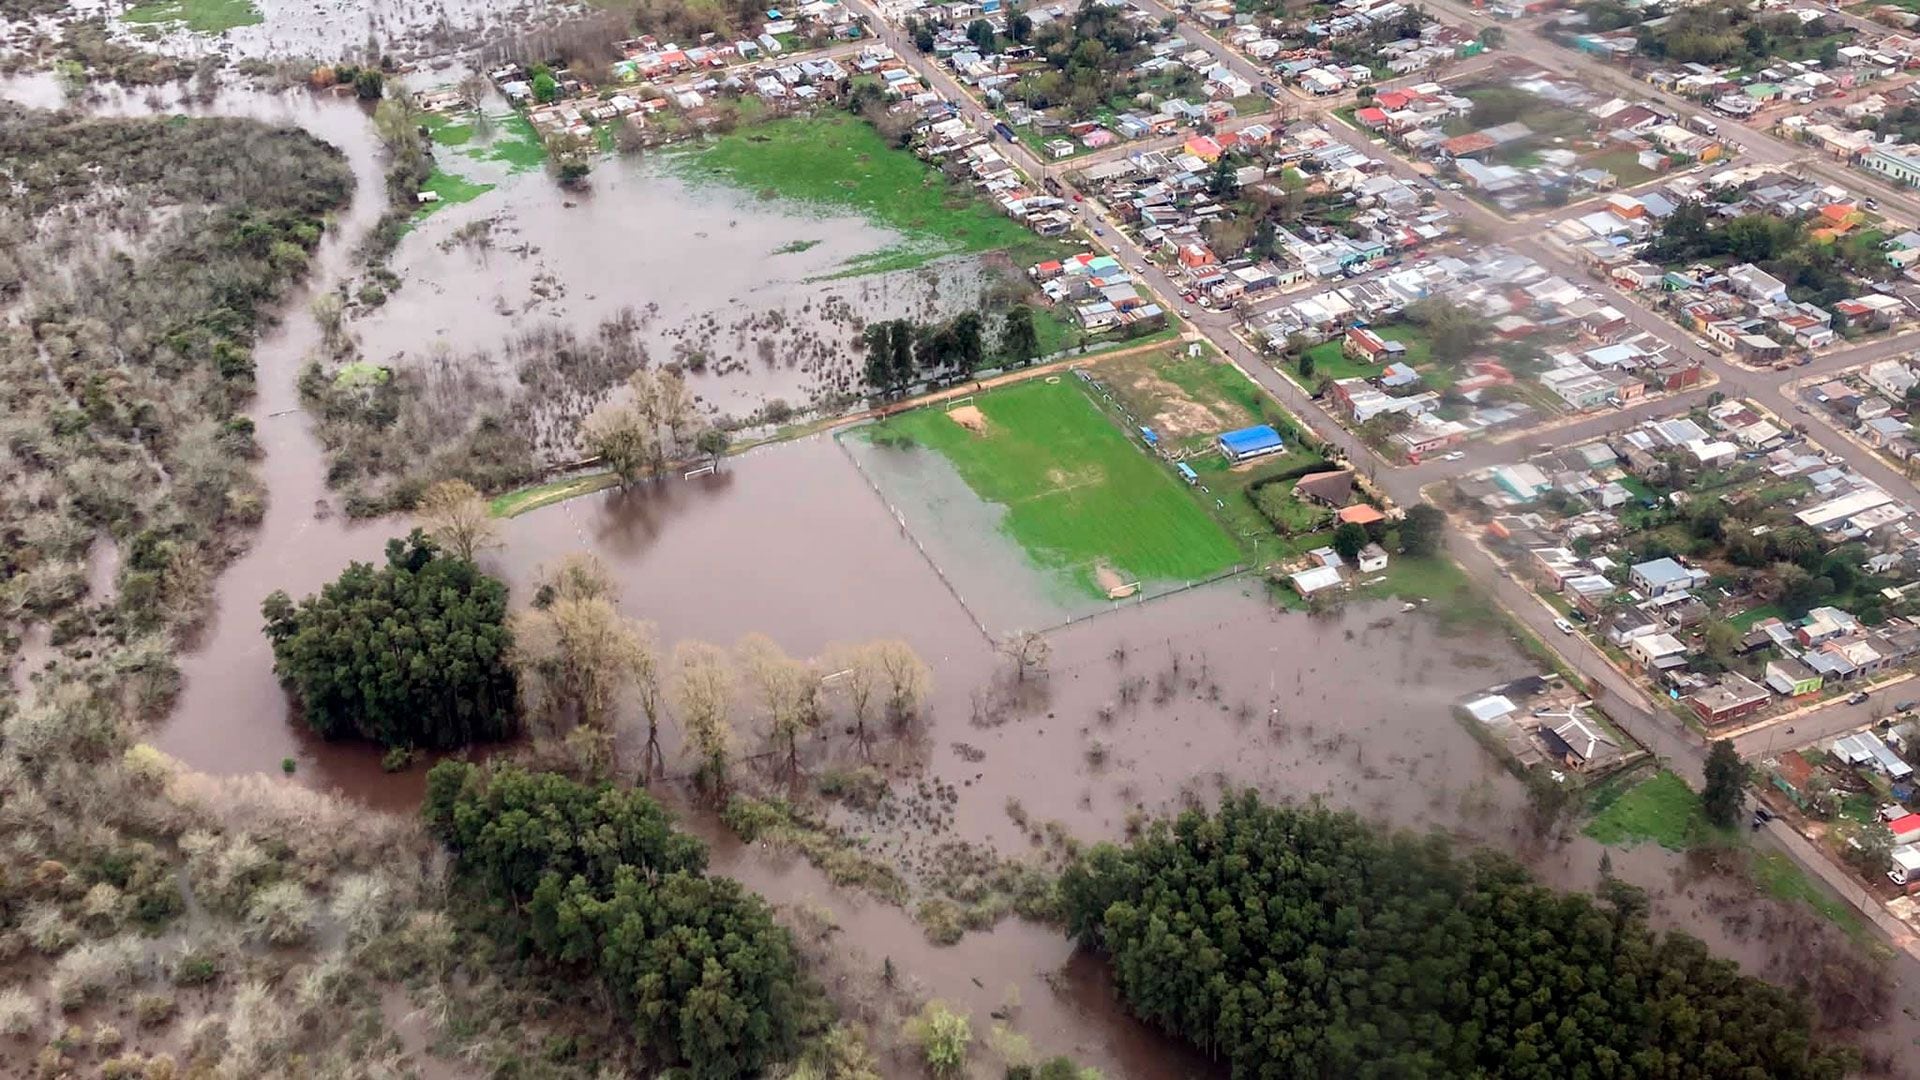 Cerro Largo, un departamento al norte de Uruguay, sufrió la peor inundación en décadas y unas 200 familias debieron ser evacuadas. (Crédito: Ministerio de Defensa)